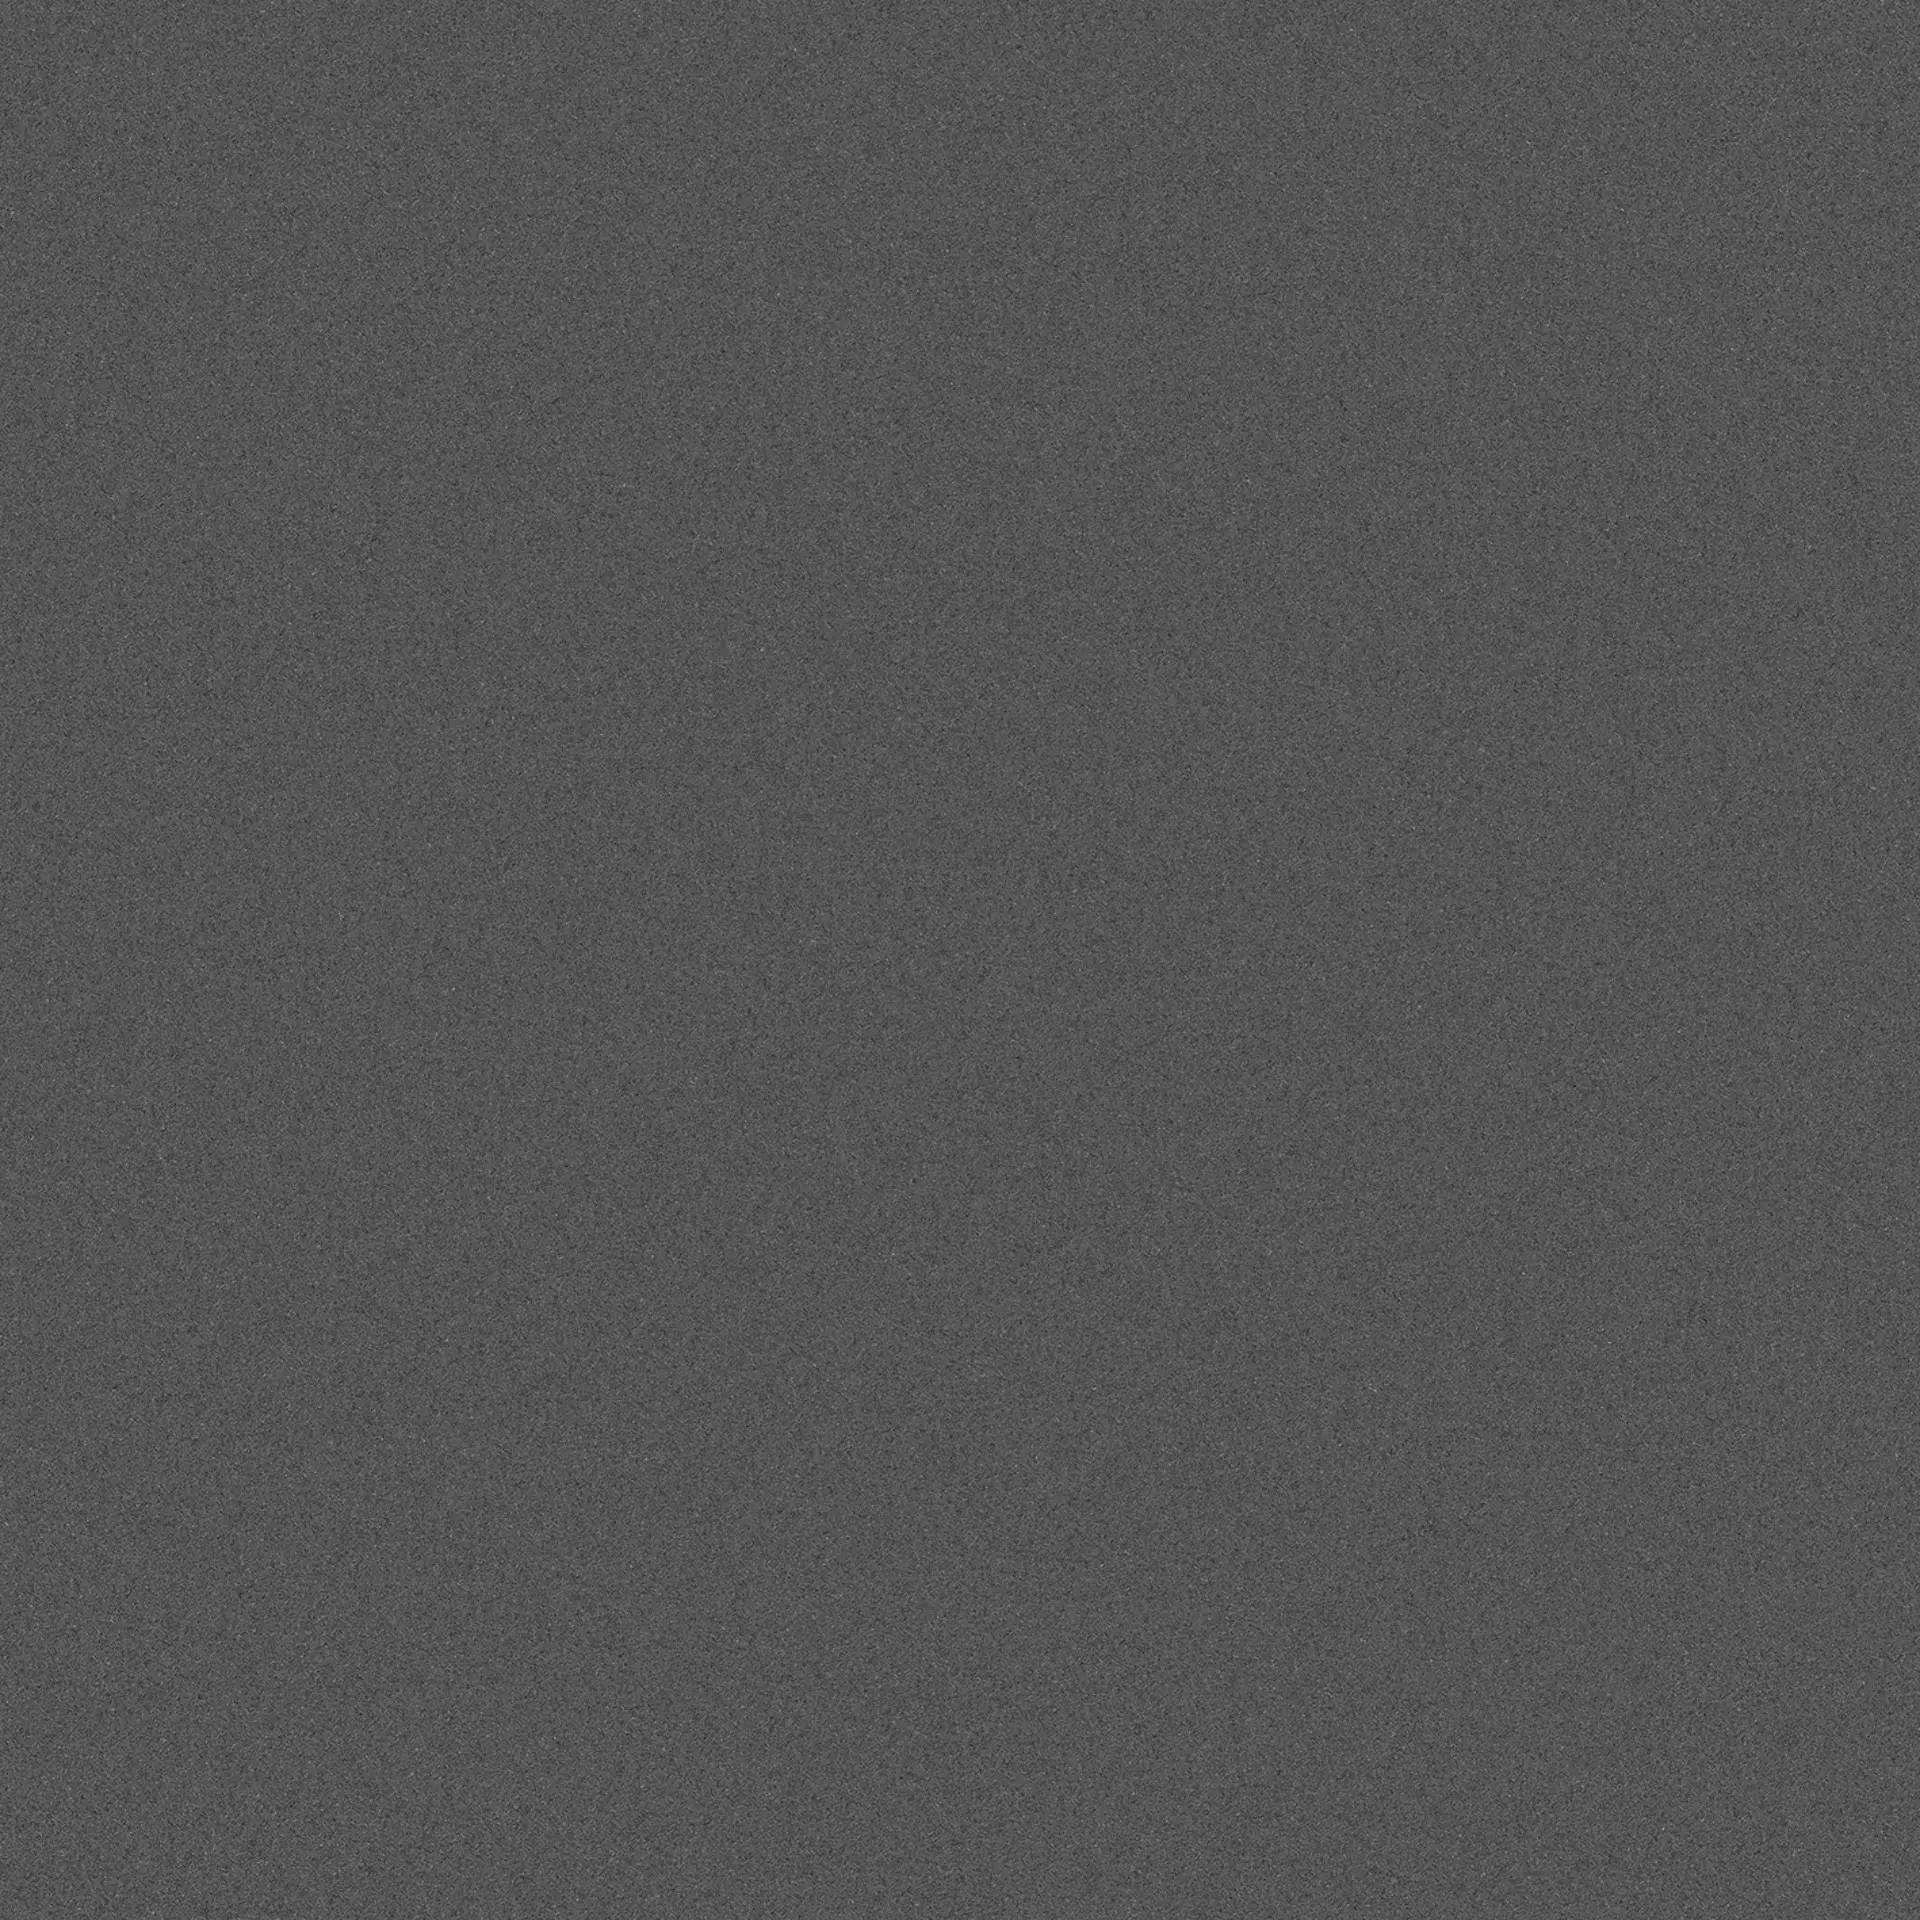 Wandfliese,Bodenfliese Villeroy & Boch Pure Line 2.0 Asphalt Grey Matt Asphalt Grey 2750-UL90 matt 120x120cm rektifiziert 12mm